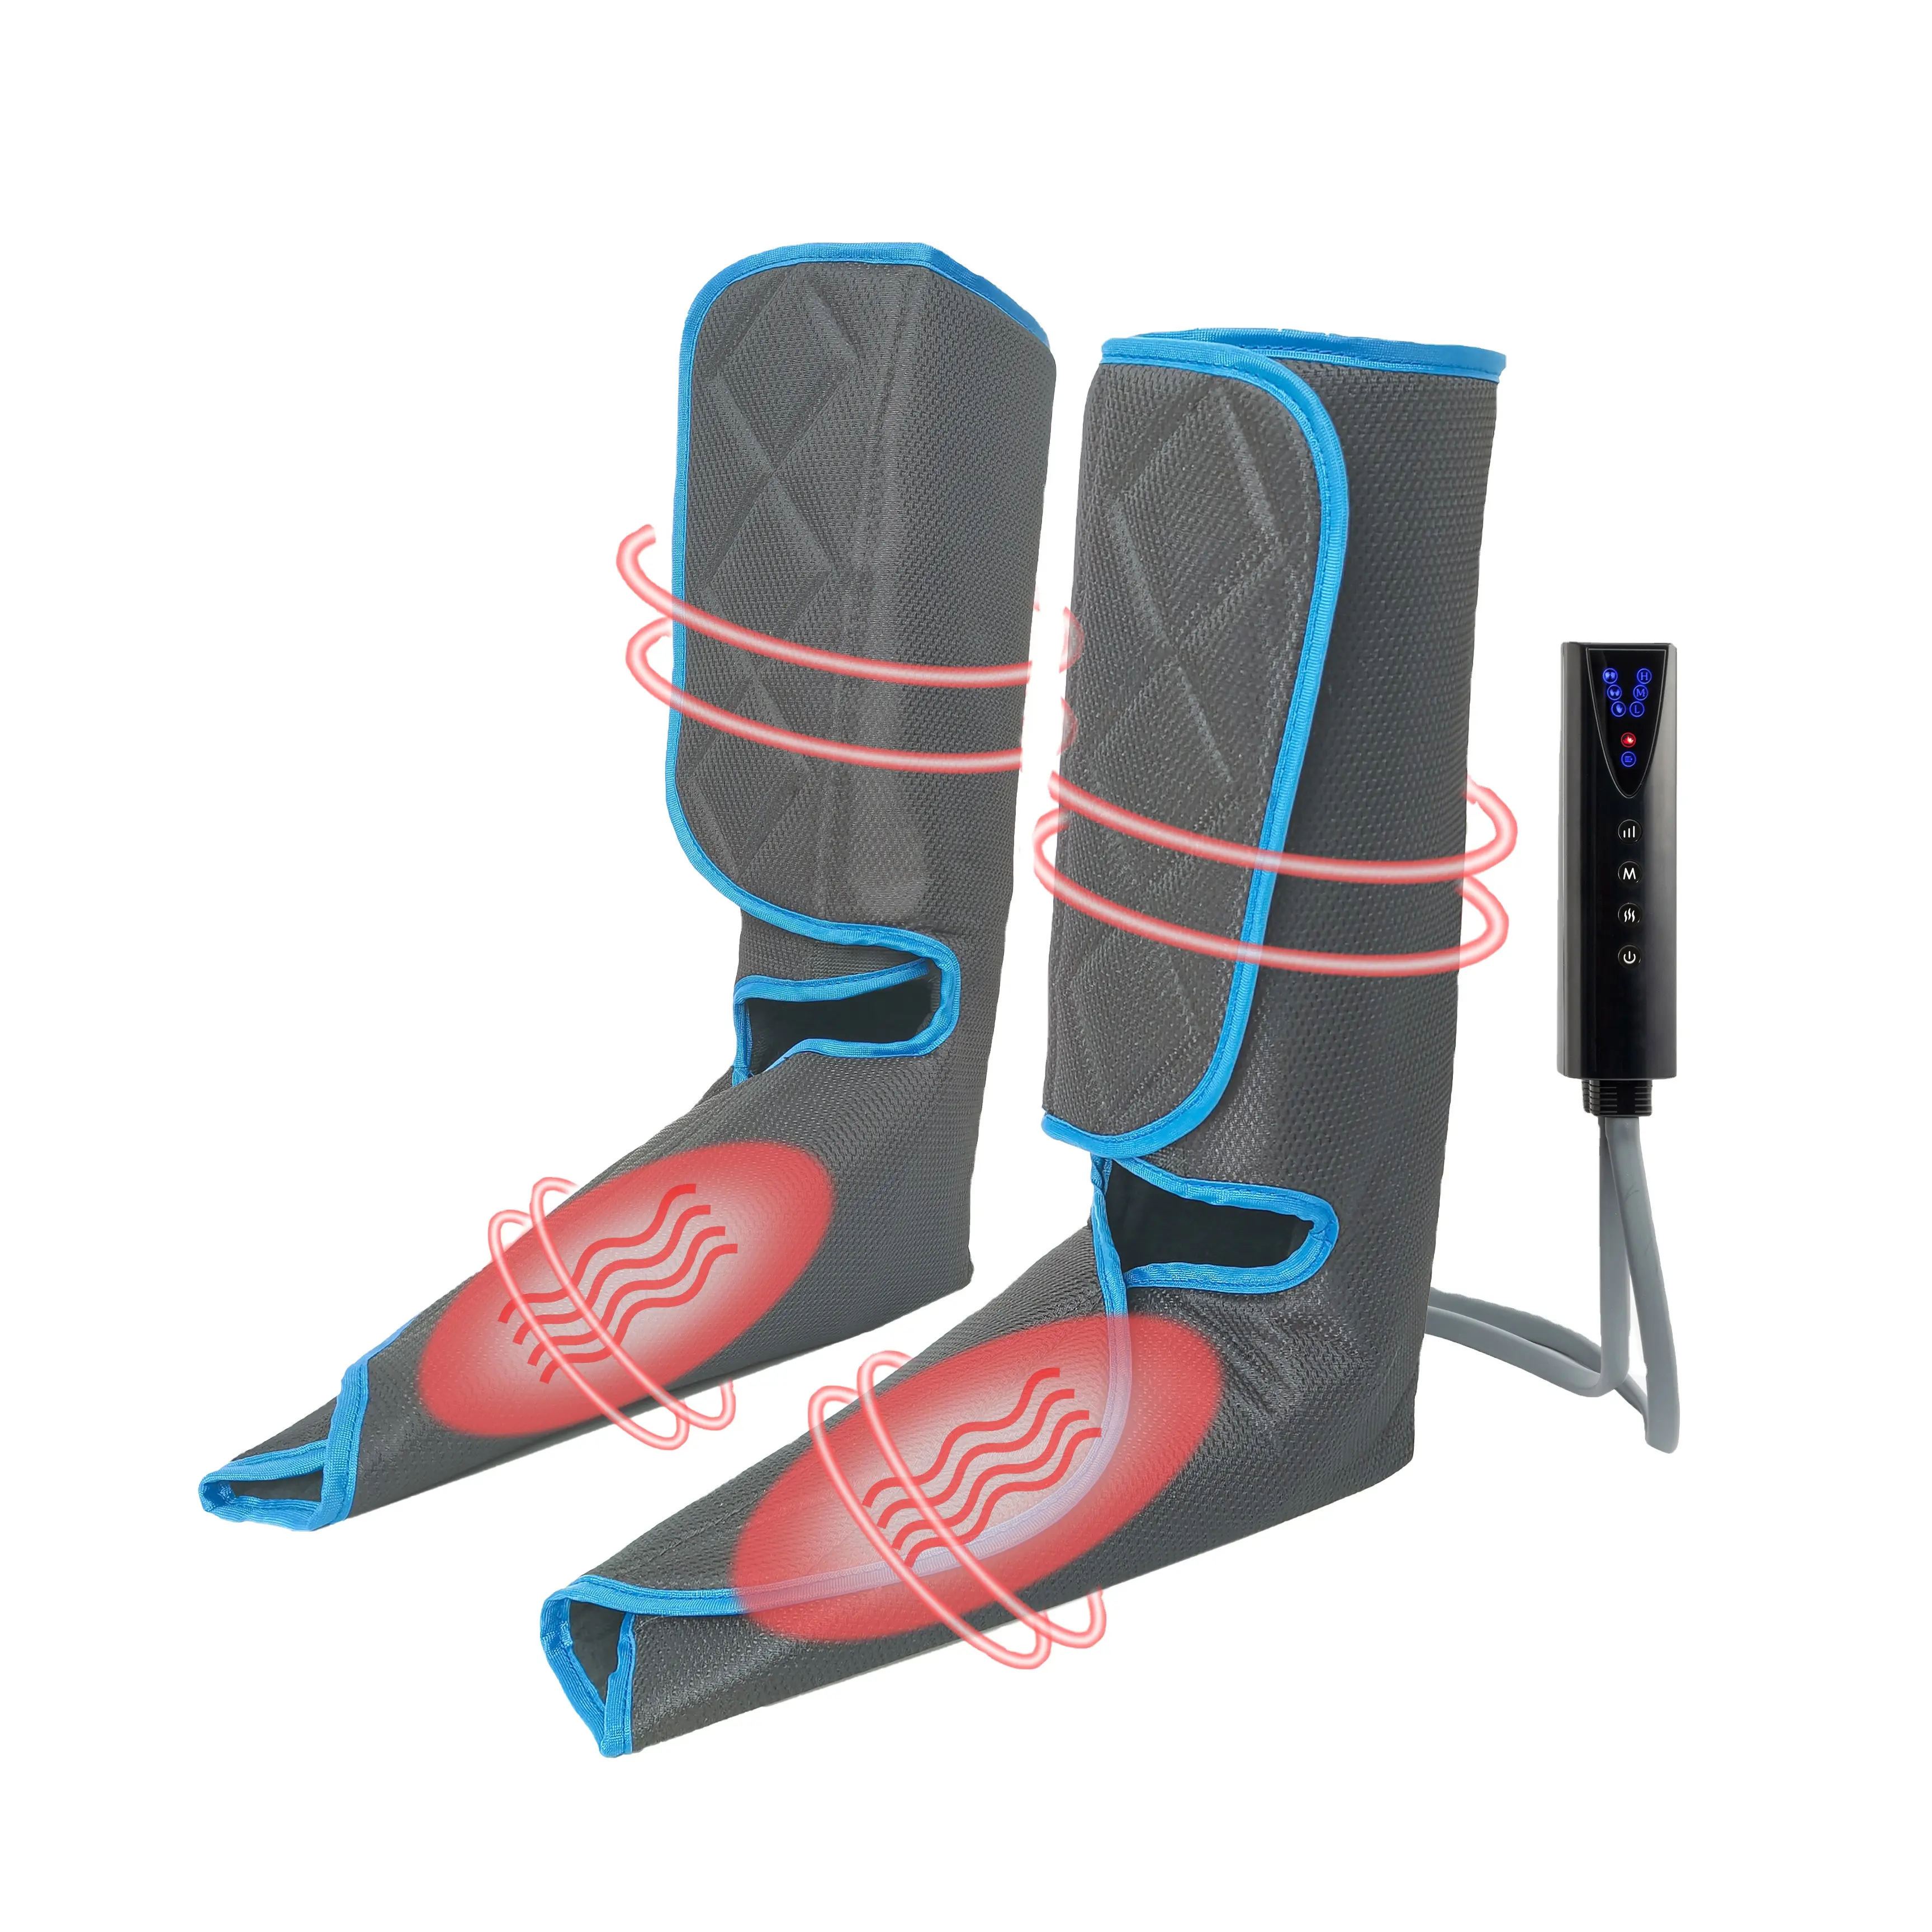 Kewang поражения электрическим током воздуха сжатие Вибрационный точечный массаж ног стимулятор массажер инструмент с нагревателем